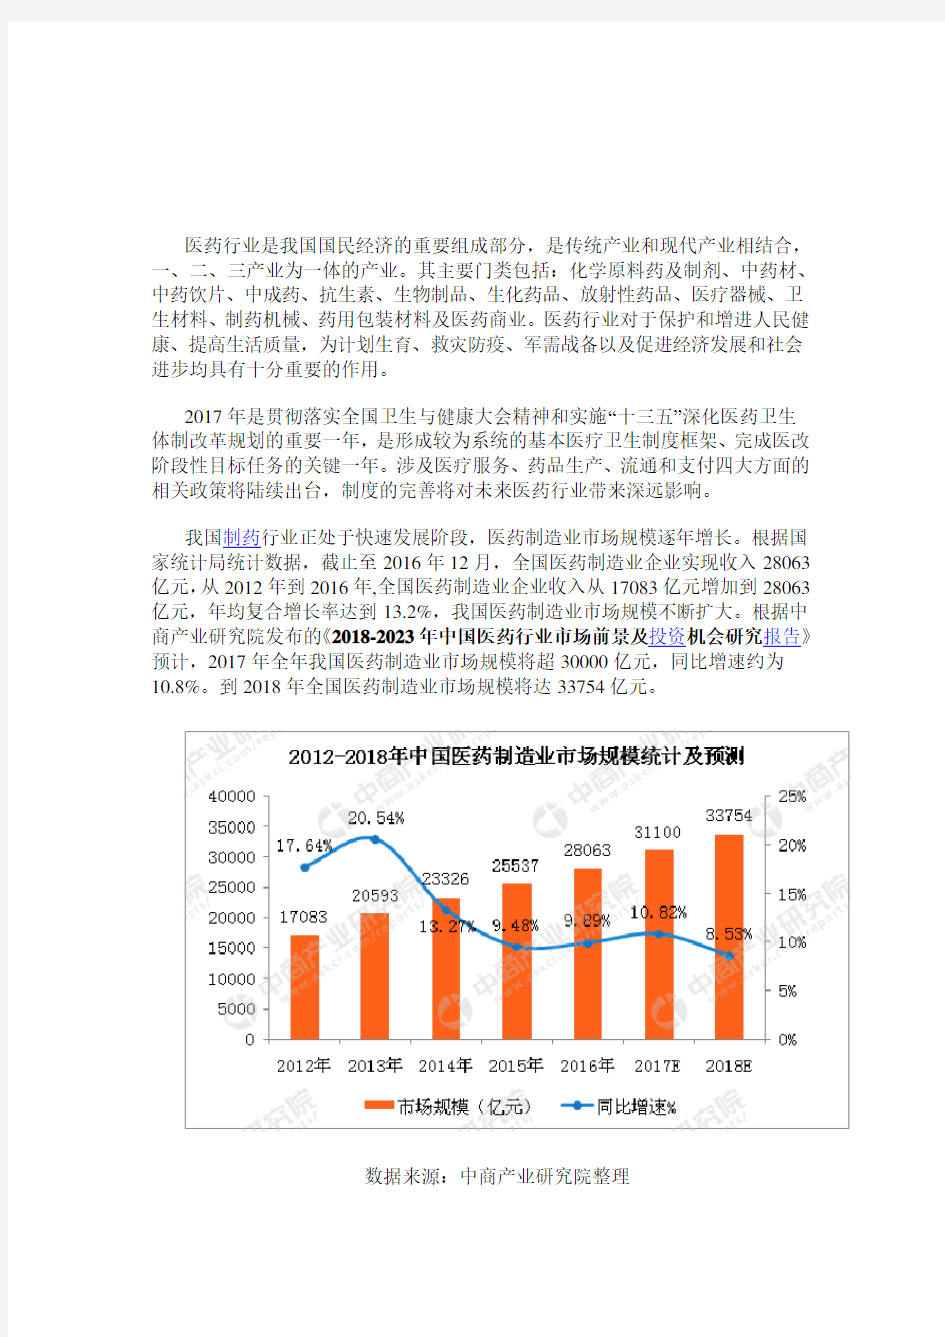 2018年中国医药行业市场预测及发展趋势分析